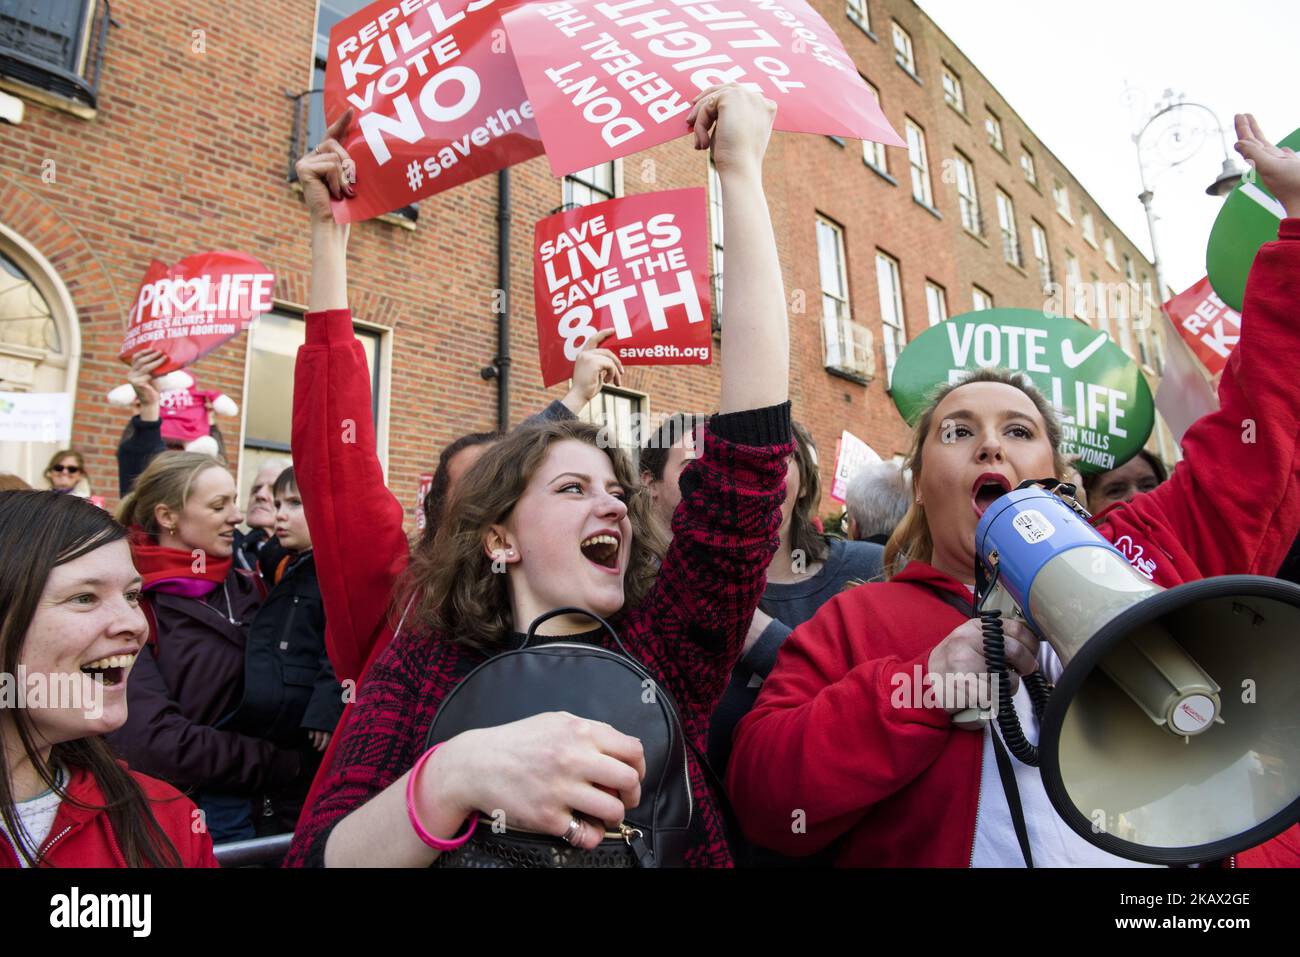 Giovani manifestanti provenienti da tutta l'Irlanda si riuniscono per il Rally della vita di tutta l'Irlanda (Save the 8th) - marzo per salvare l'emendamento del 8th alla costituzione irlandese che protegge il loro diritto alla vita e vieta l'aborto. Sabato 10 marzo 2017, Dublino, Irlanda. Il governo irlandese ha confermato che terrà un referendum sulla riforma delle severe leggi anti-aborto del paese entro la fine di maggio. L'articolo 40.3.3, noto come l'ottavo emendamento della Costituzione irlandese, riconosce la parità di diritto alla vita della madre e del nascituro. Se il voto è favorevole all'abrogazione, il governo Foto Stock